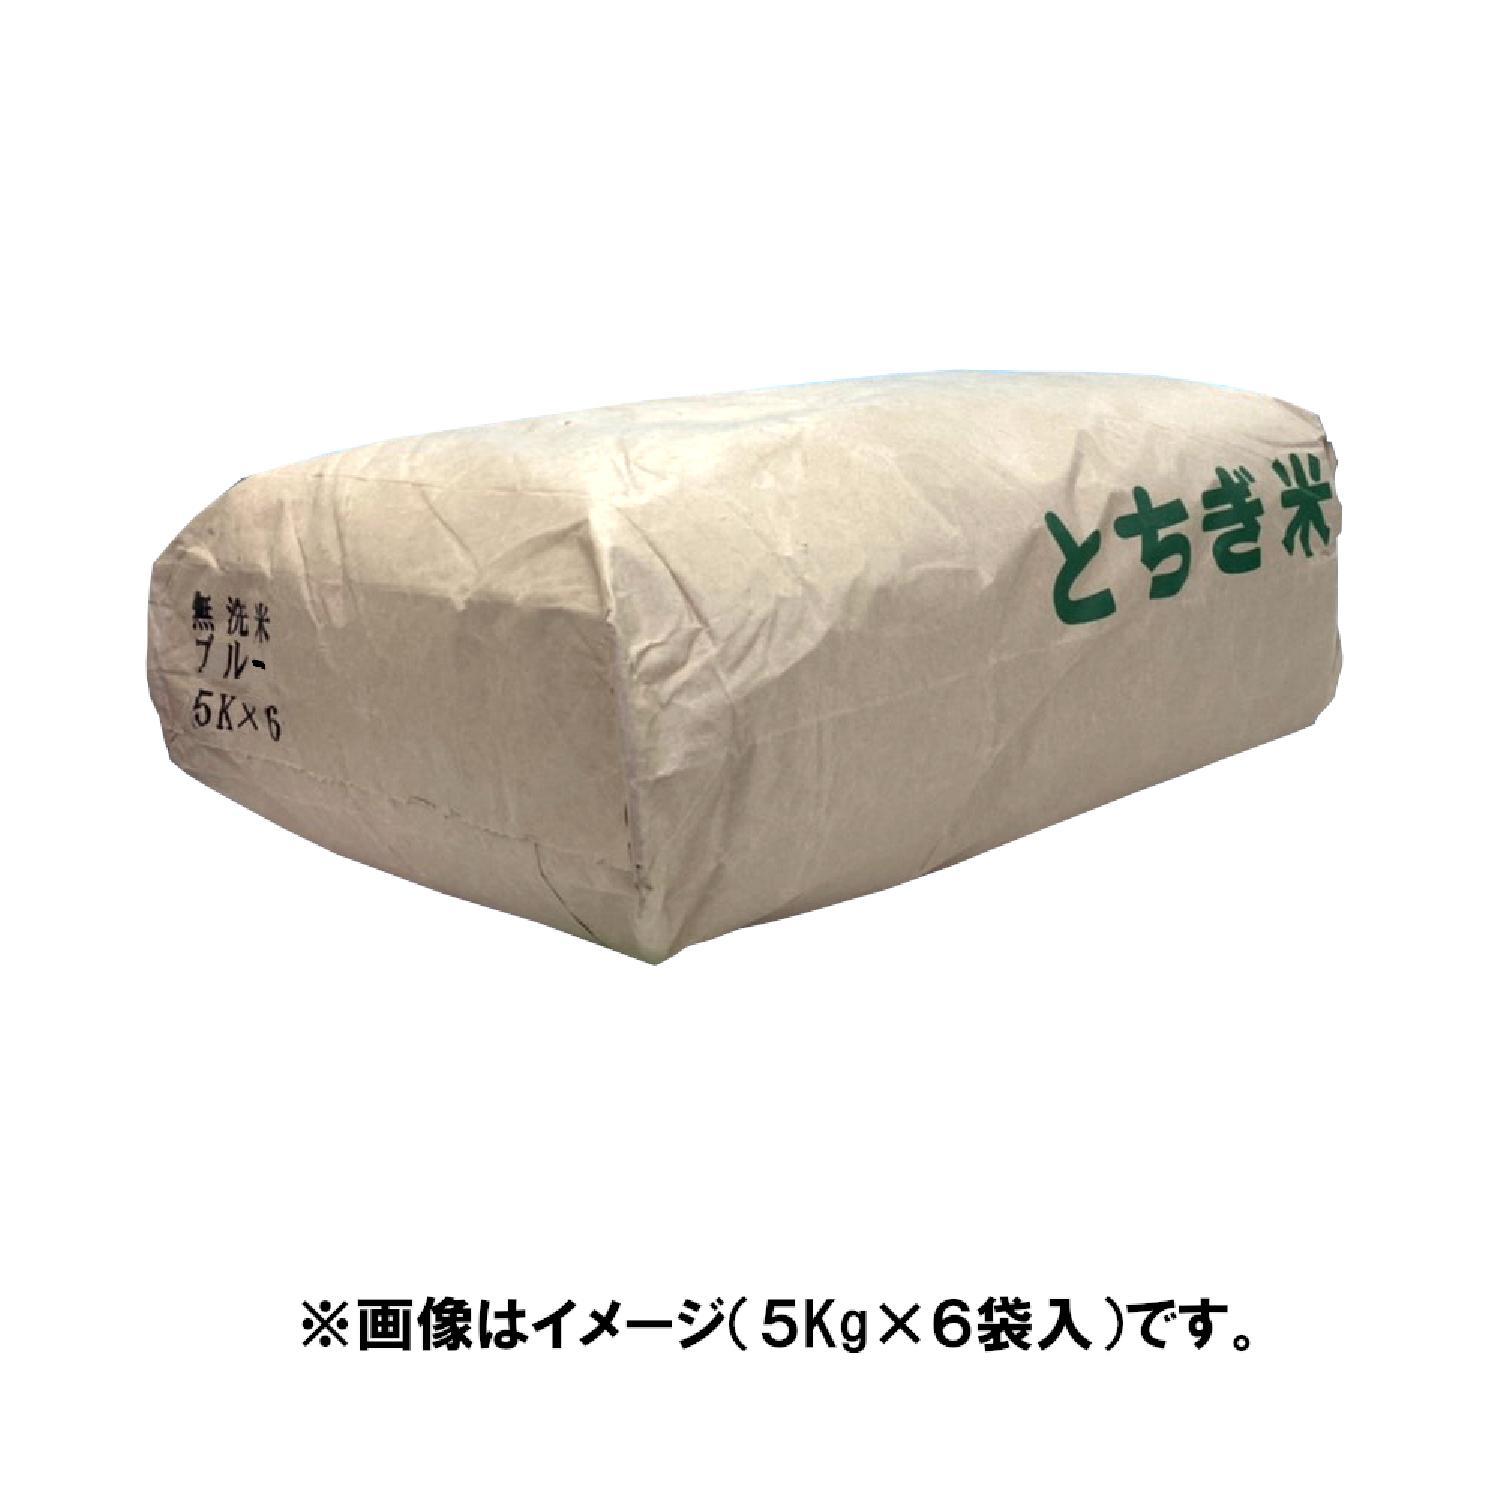 無洗米 ブルー 国内産 5kg×6袋 合計30kg [送料無料]※配送時間の指定は出来ません_画像_